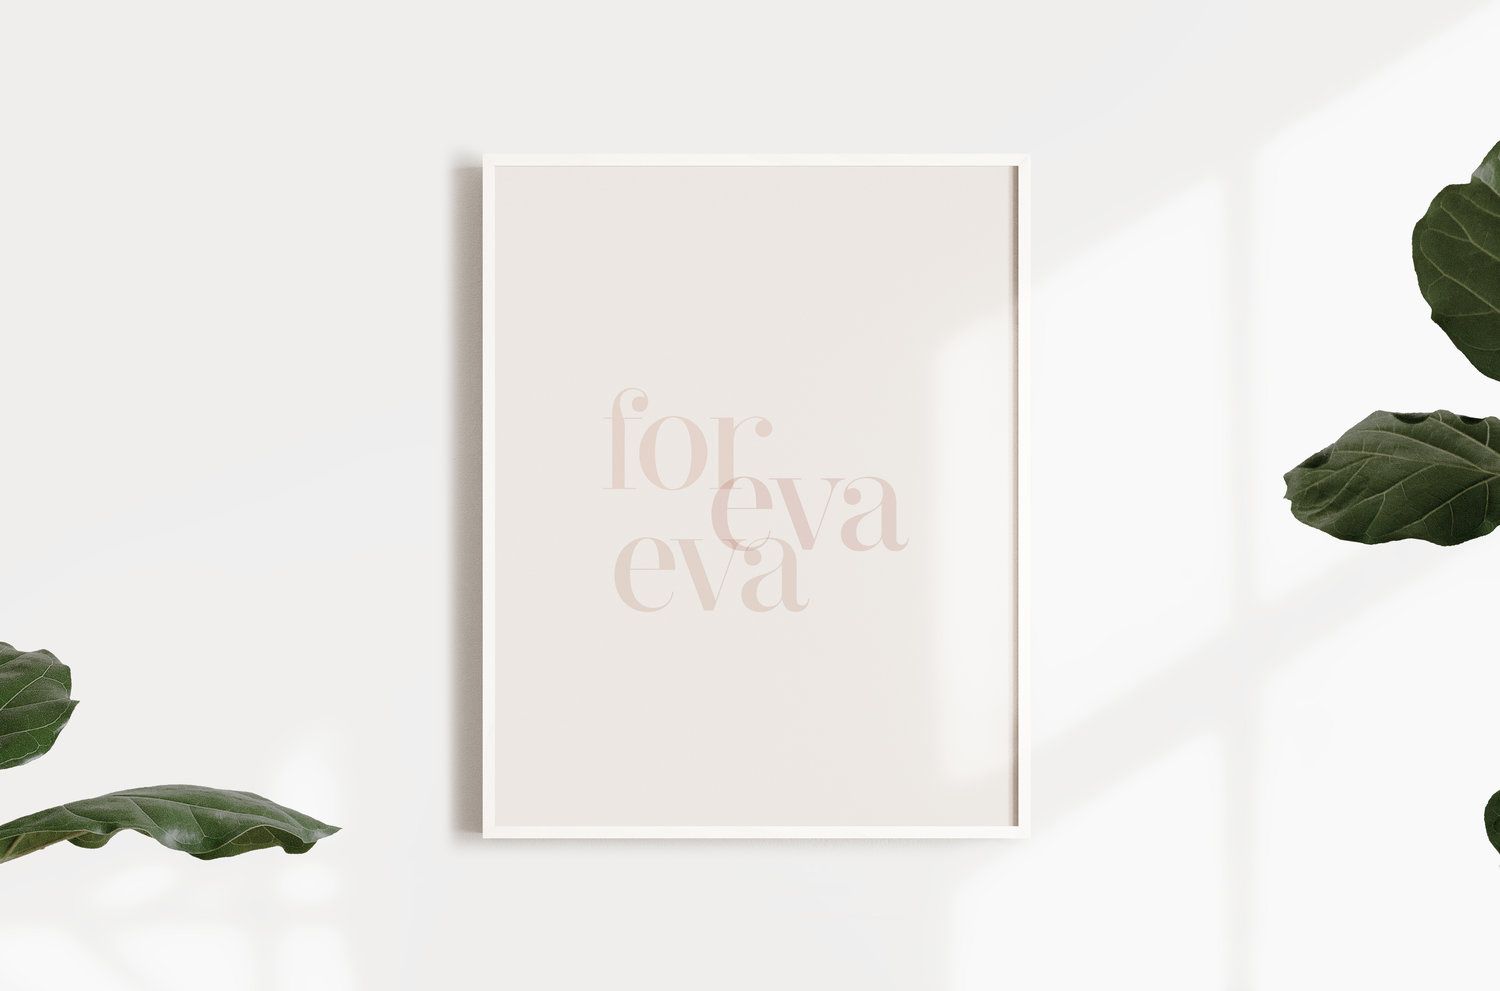 for eva eva print frame gift